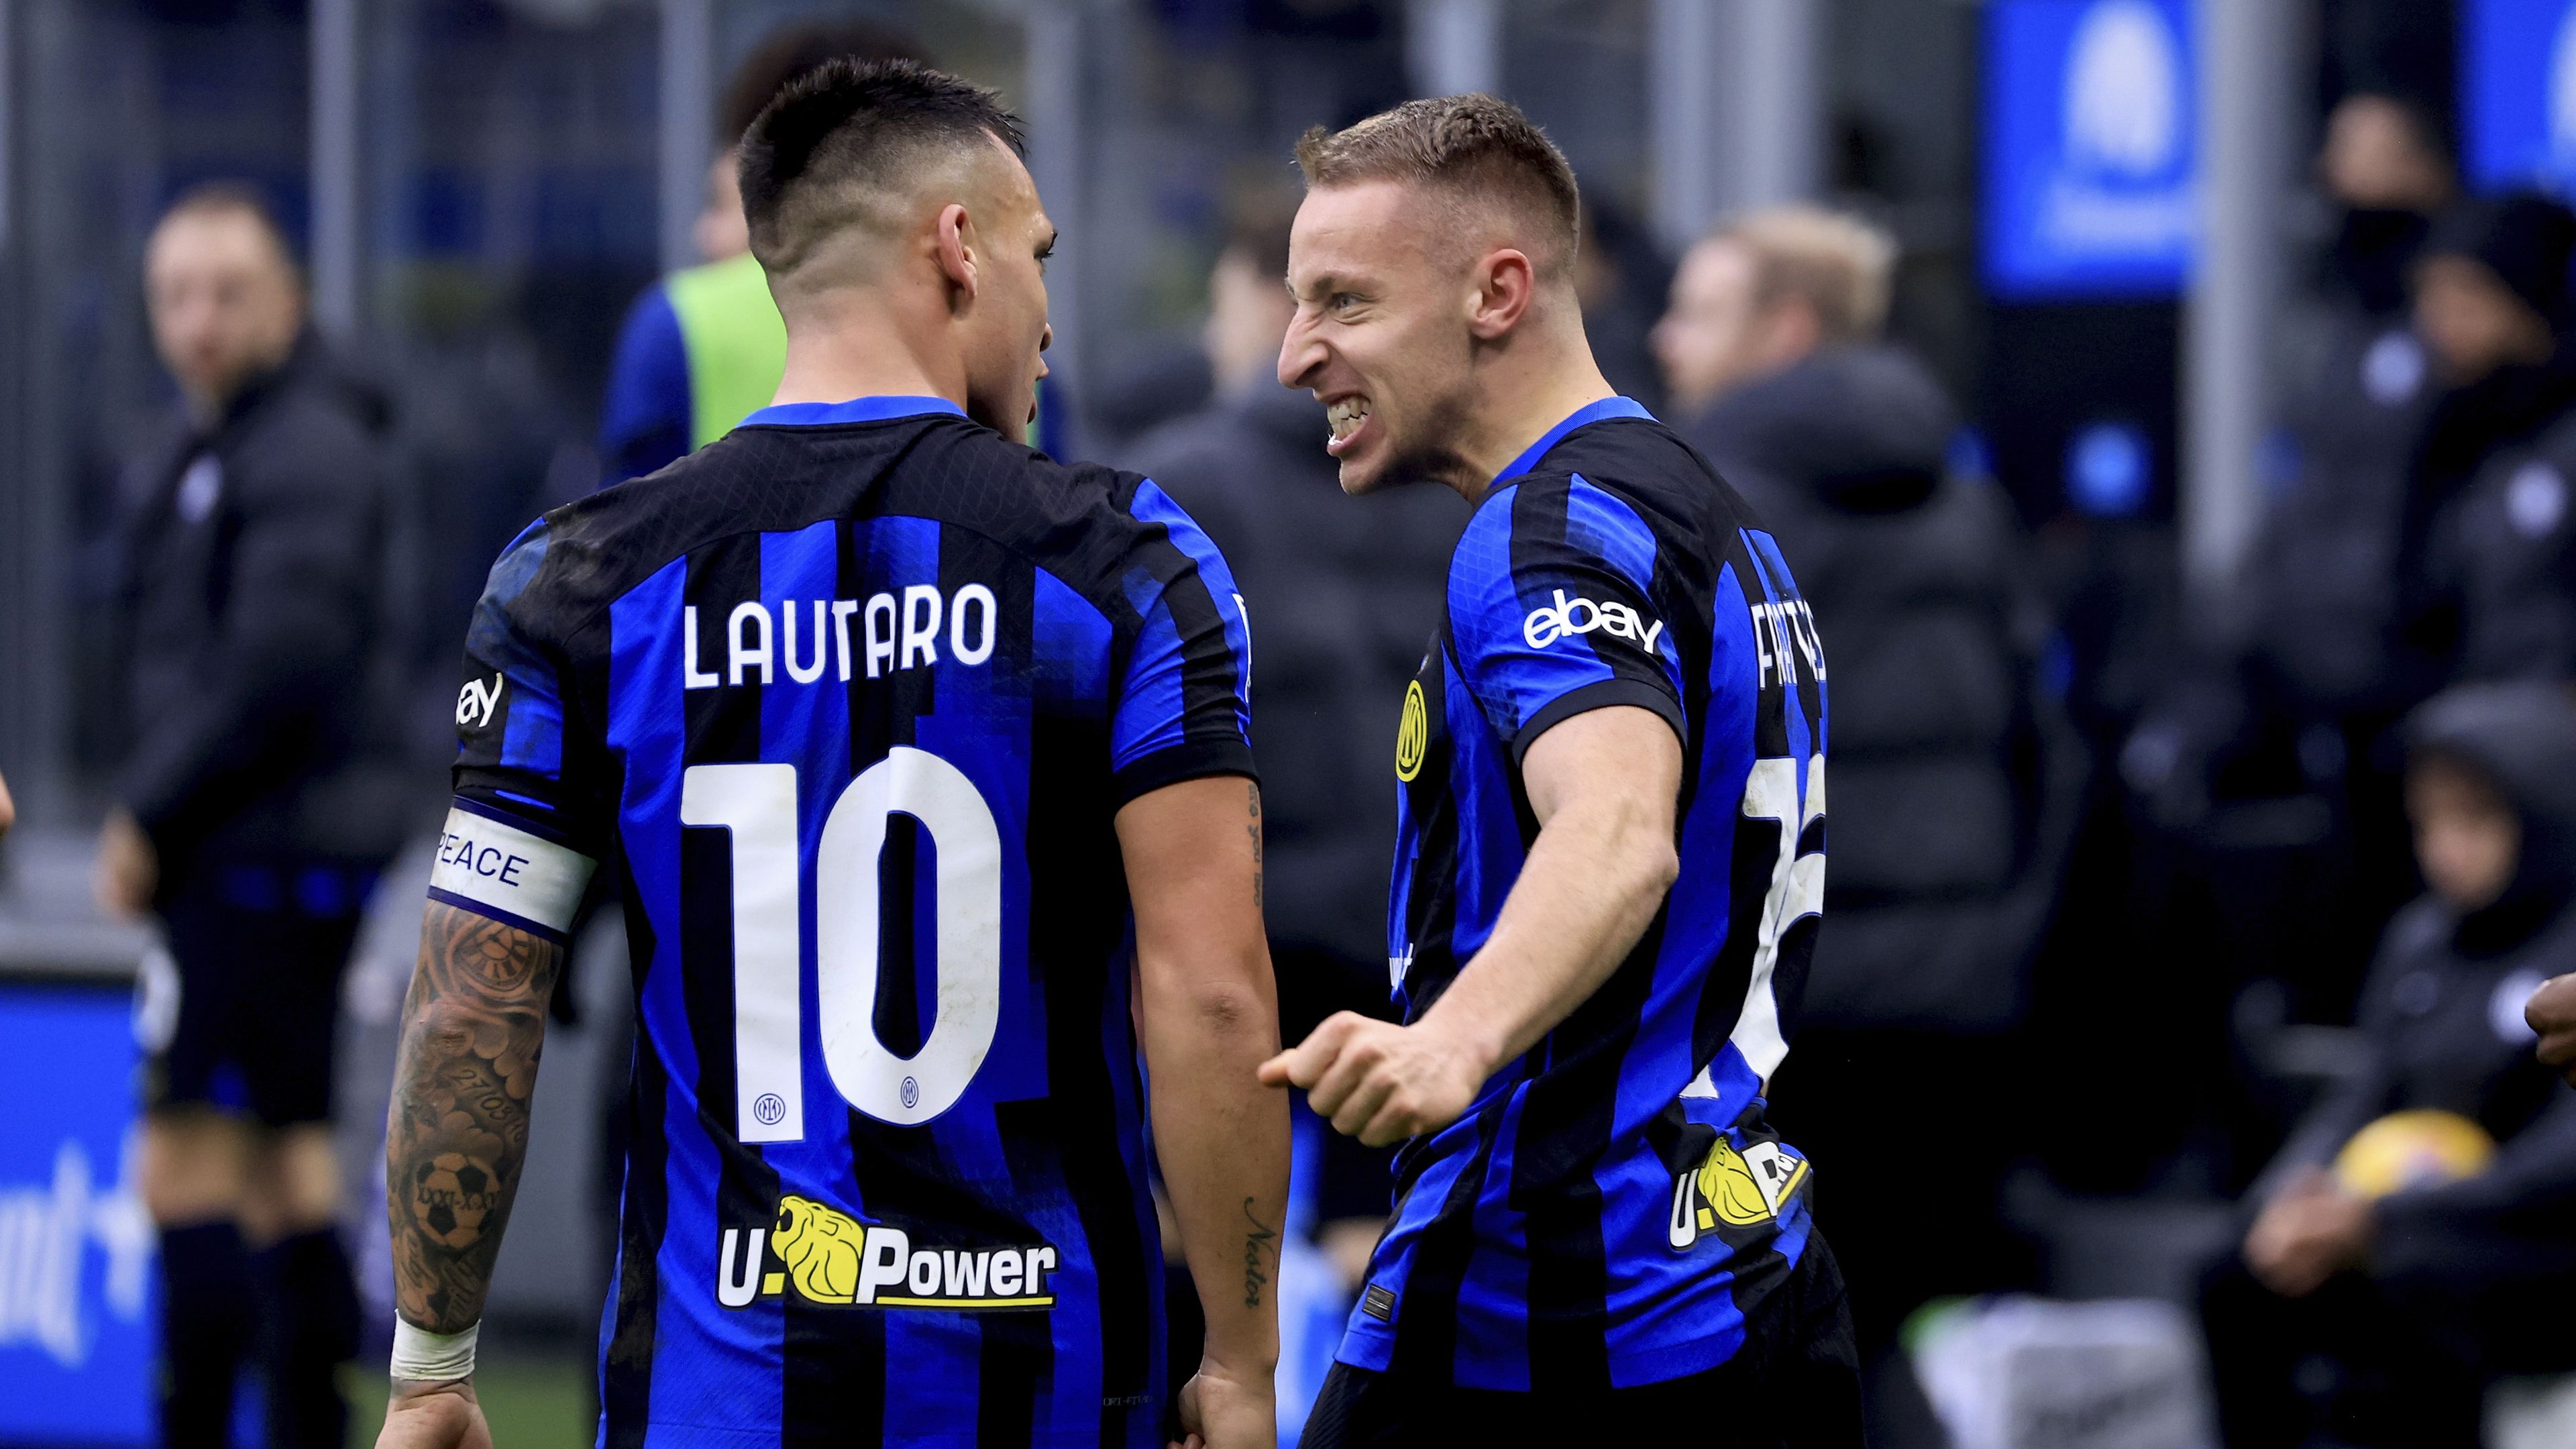 Hatalmas dráma a végén, az Inter legyőzte a Veronát – videóval